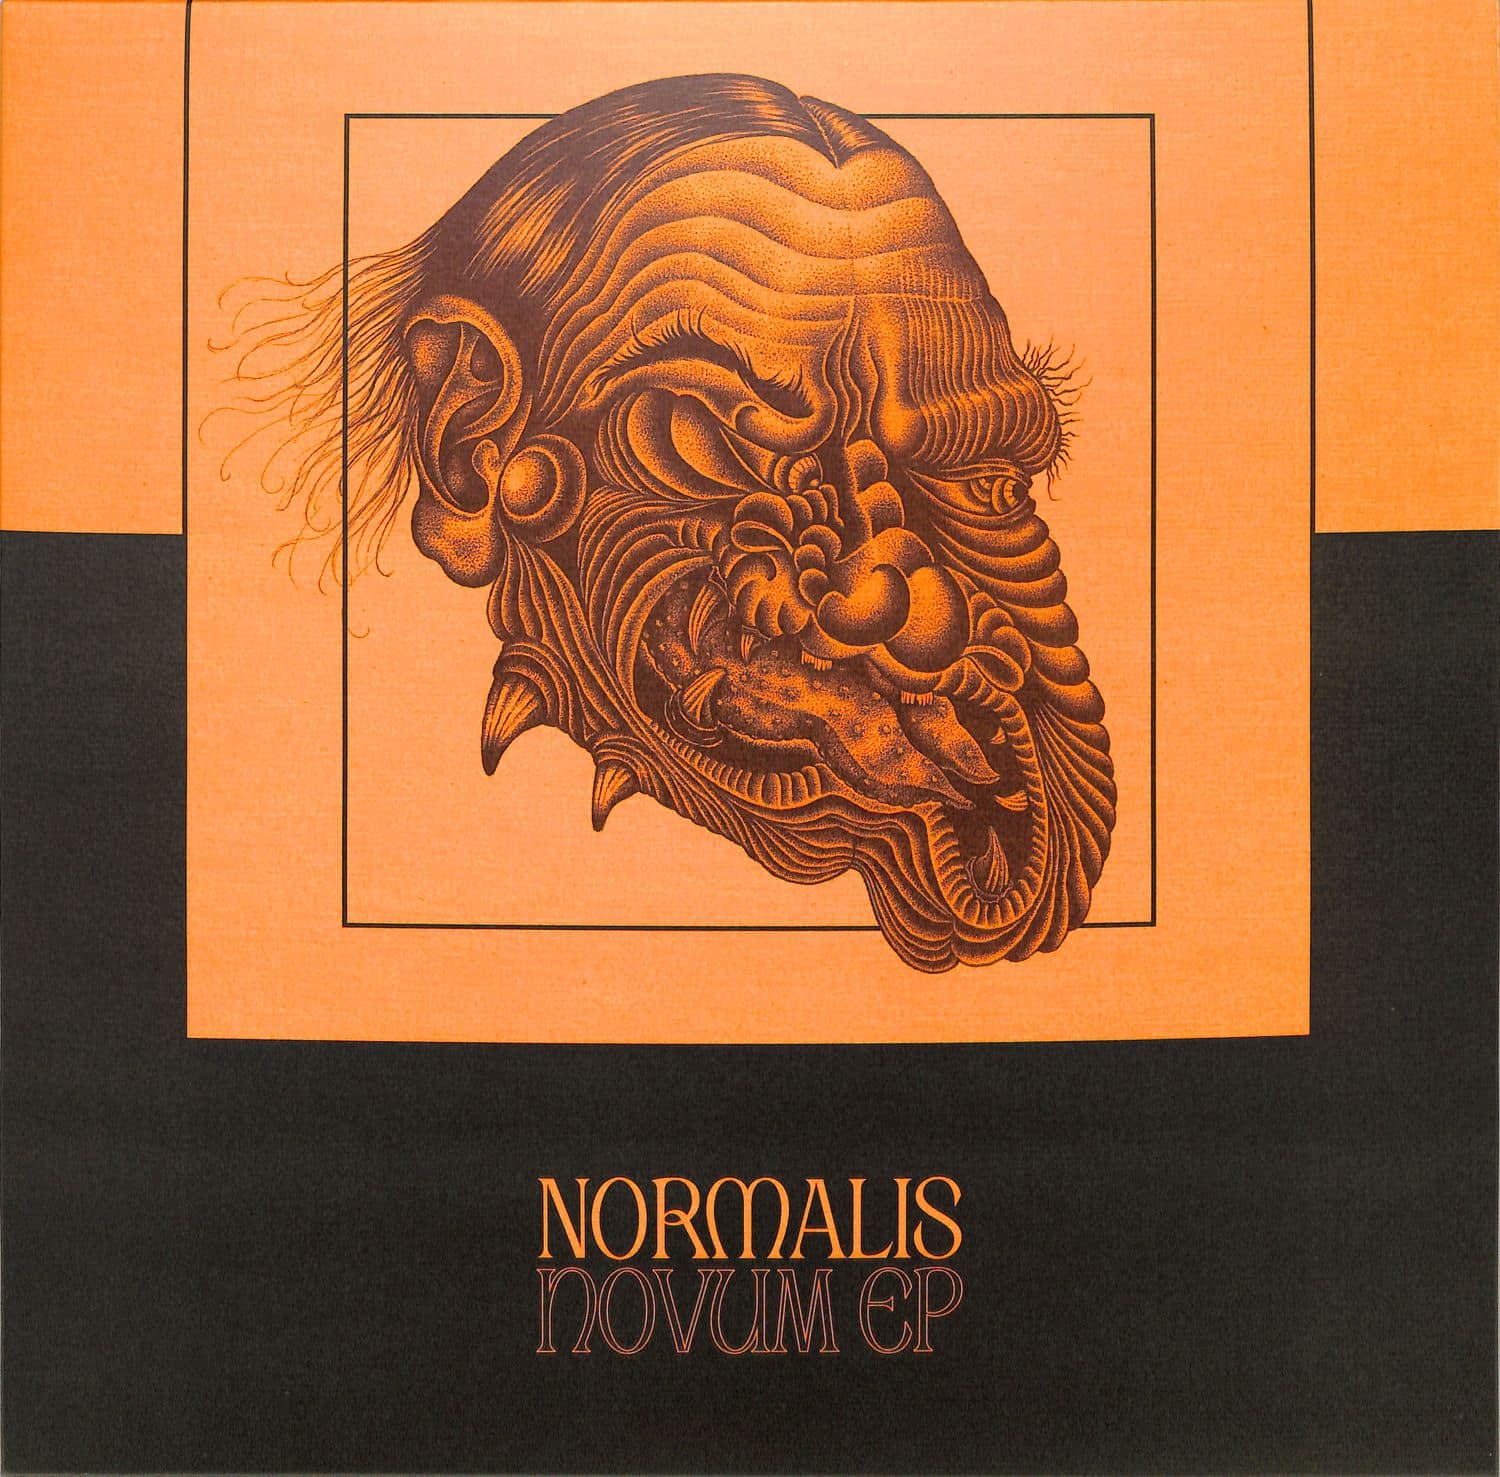 SlugoS - NORMALIS NOVUM EP